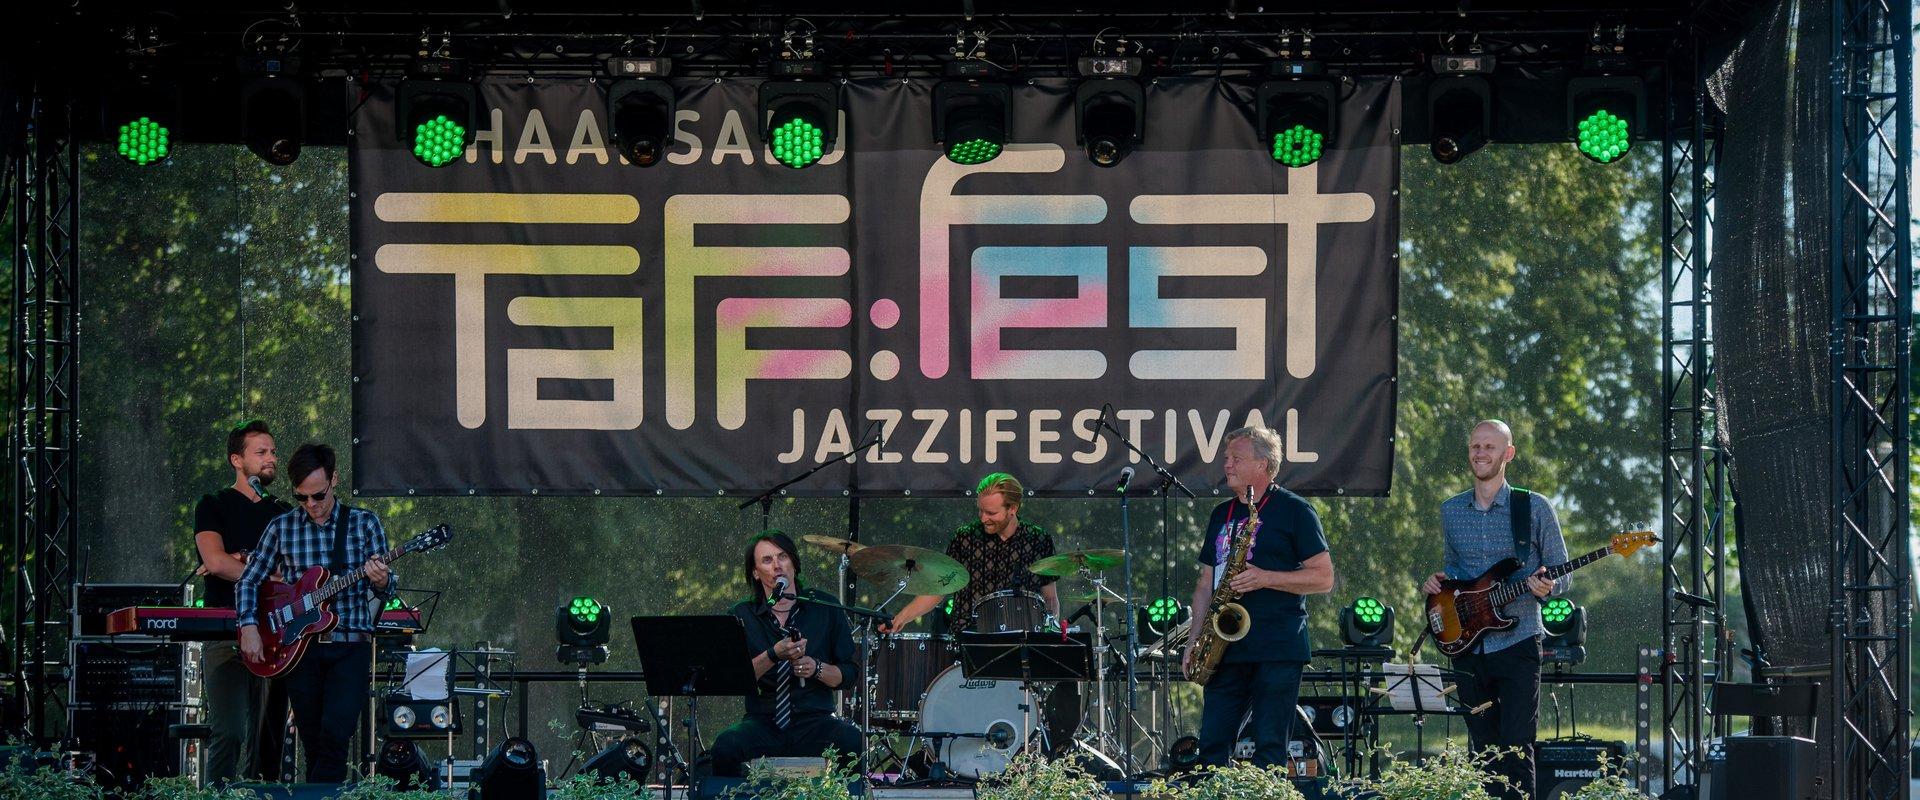 Jazzifestivalil TAFF:fest sulandub üheks meeleolukaks tervikuks Eesti parim jazzmuusika ja imekauni Haapsalu linna vaimsus! Esmakordselt 2020. aasta j